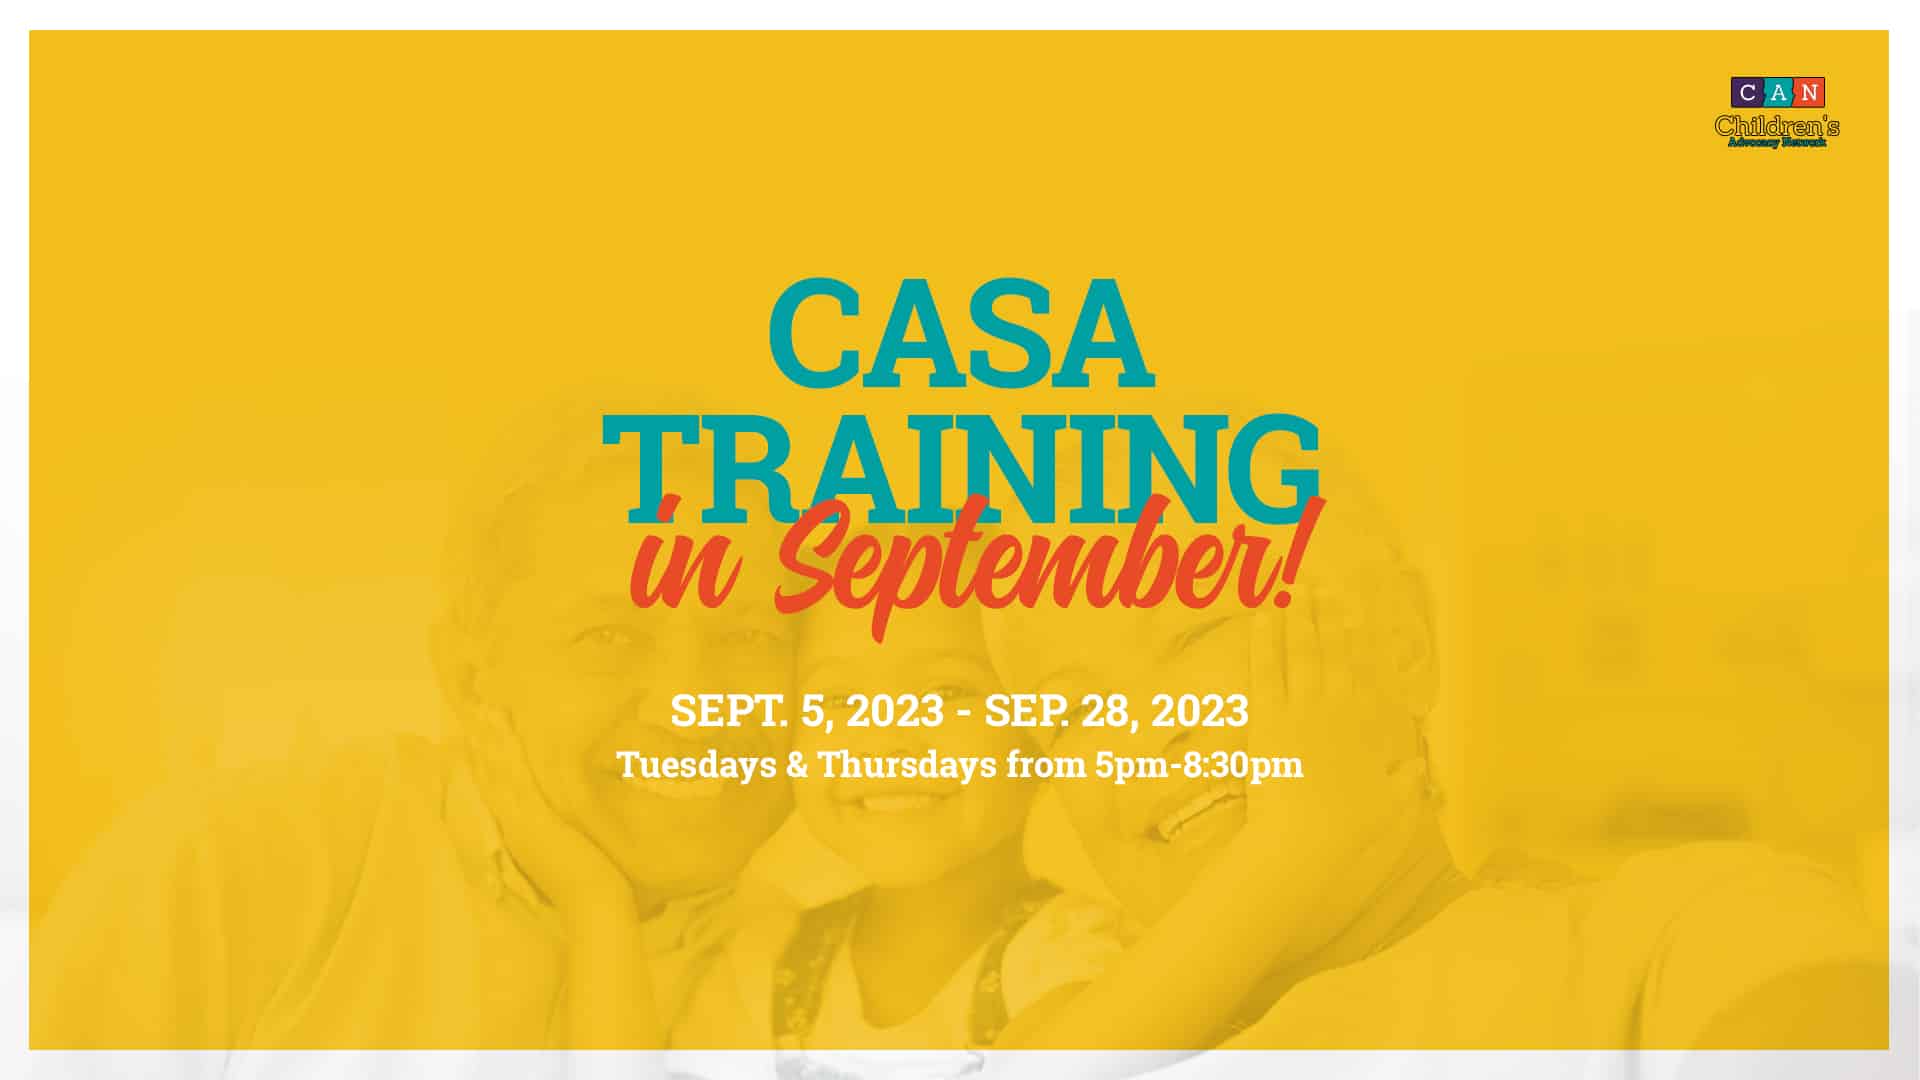 CASA Volunteer Training - September